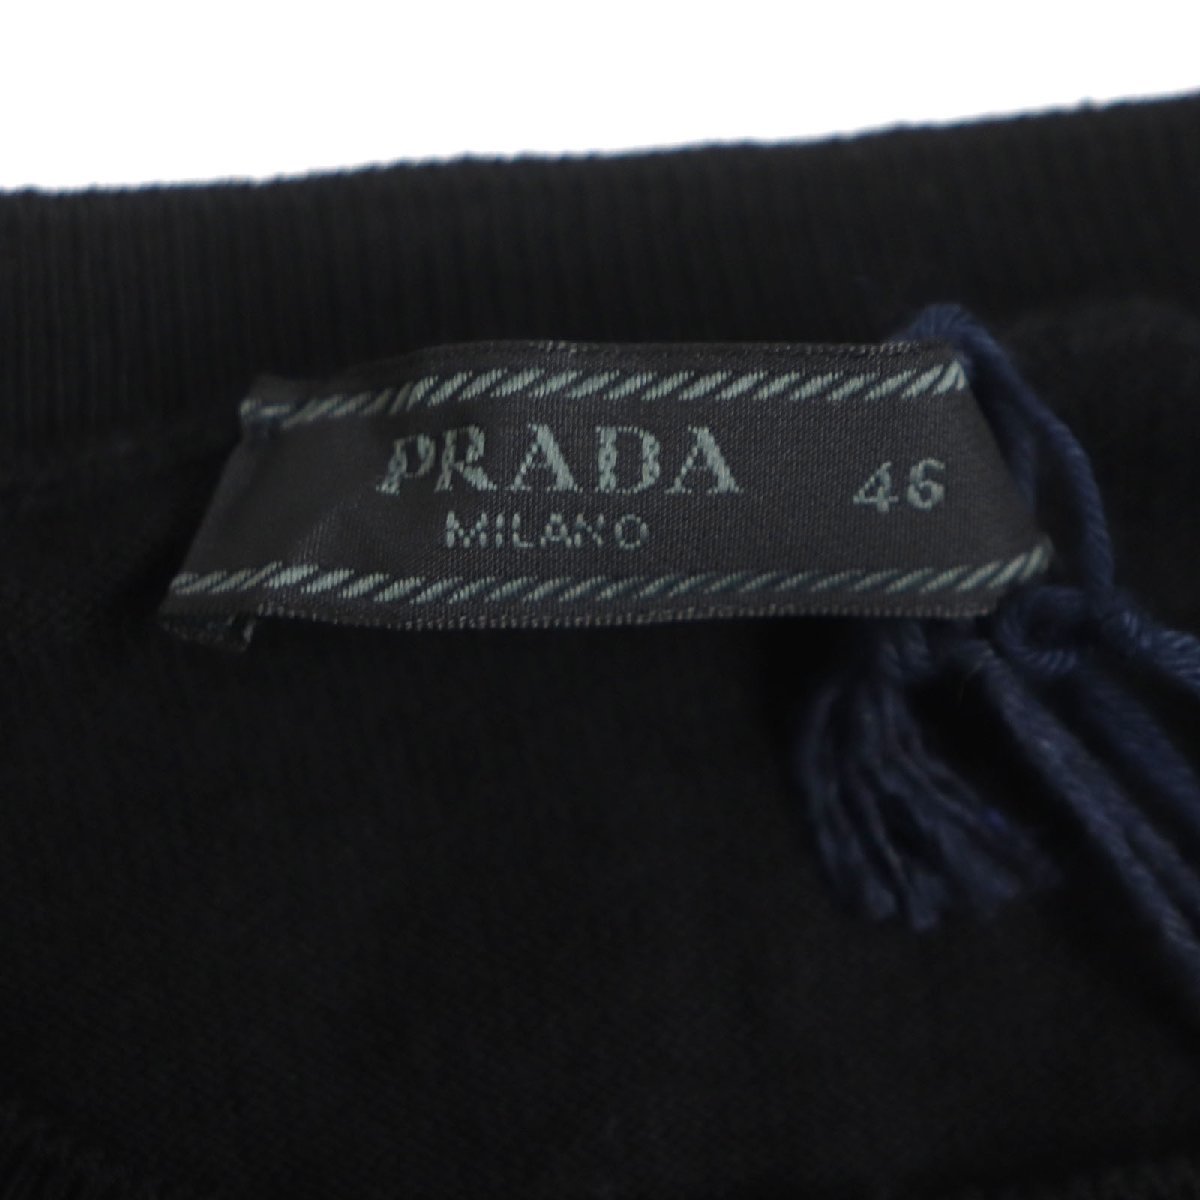  не использовался товар PRADA Prada 2020 год производства DNA641 хлопок вырез лодочкой простой * свитер вязаный черный 46 стандартный товар мужской 